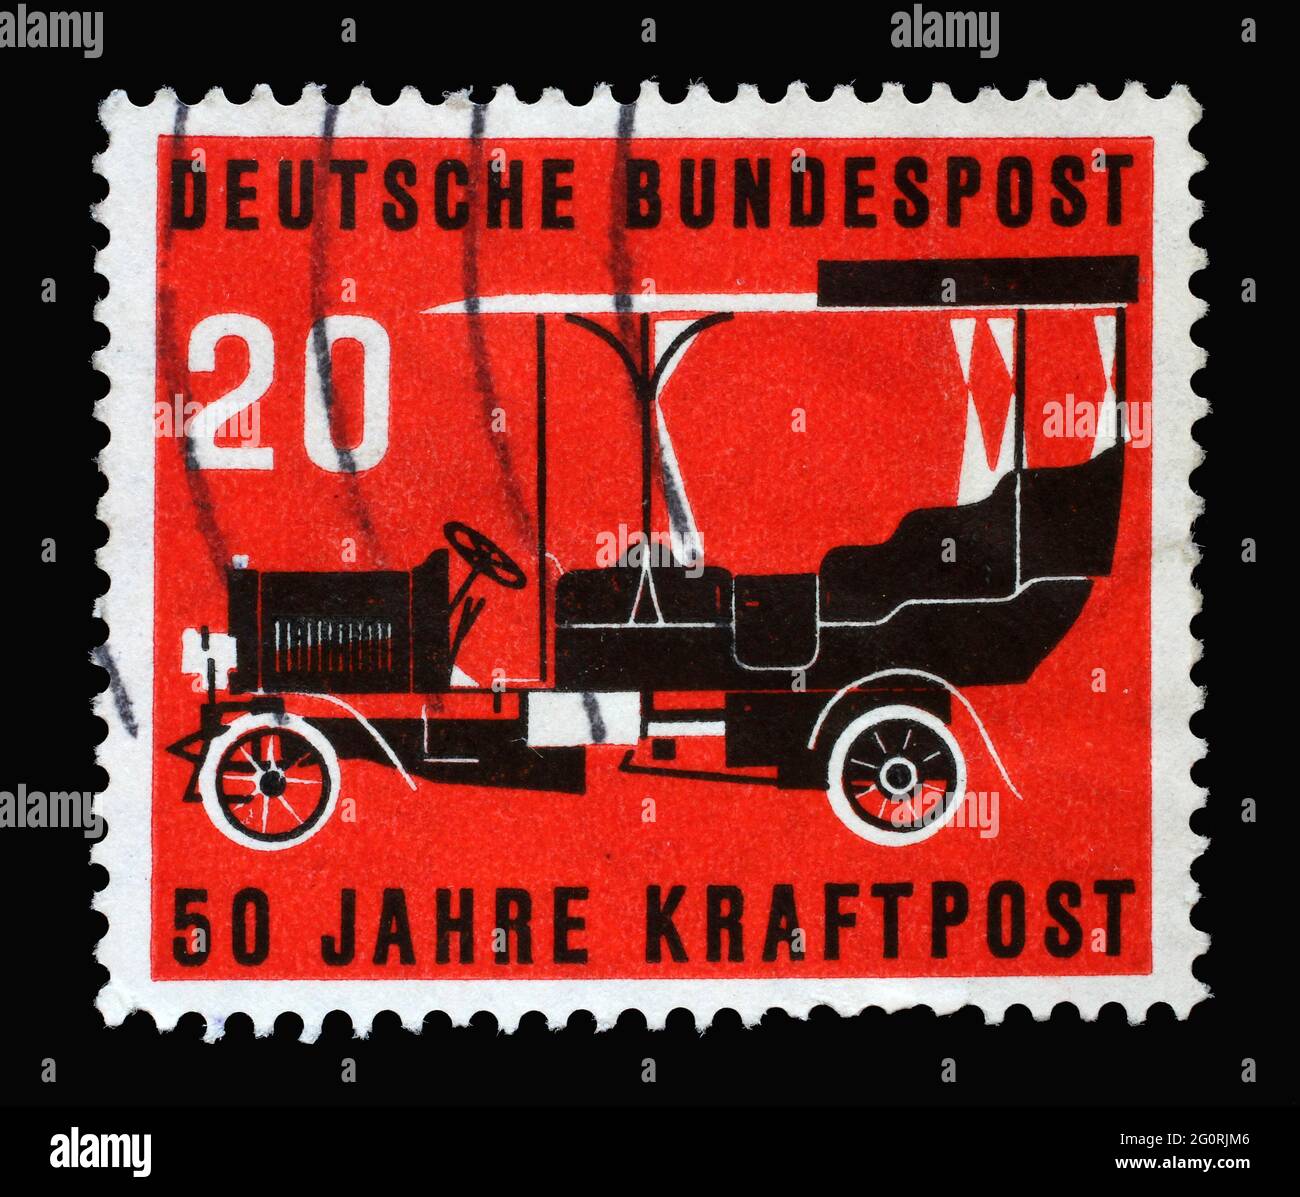 Stempel gedruckt in Deutschland, zeigt einen Postbus von 1906 auf rotem Hintergrund. Die Briefmarke wurde anlässlich der 50-jährigen Automobilzeit veröffentlicht Stockfoto